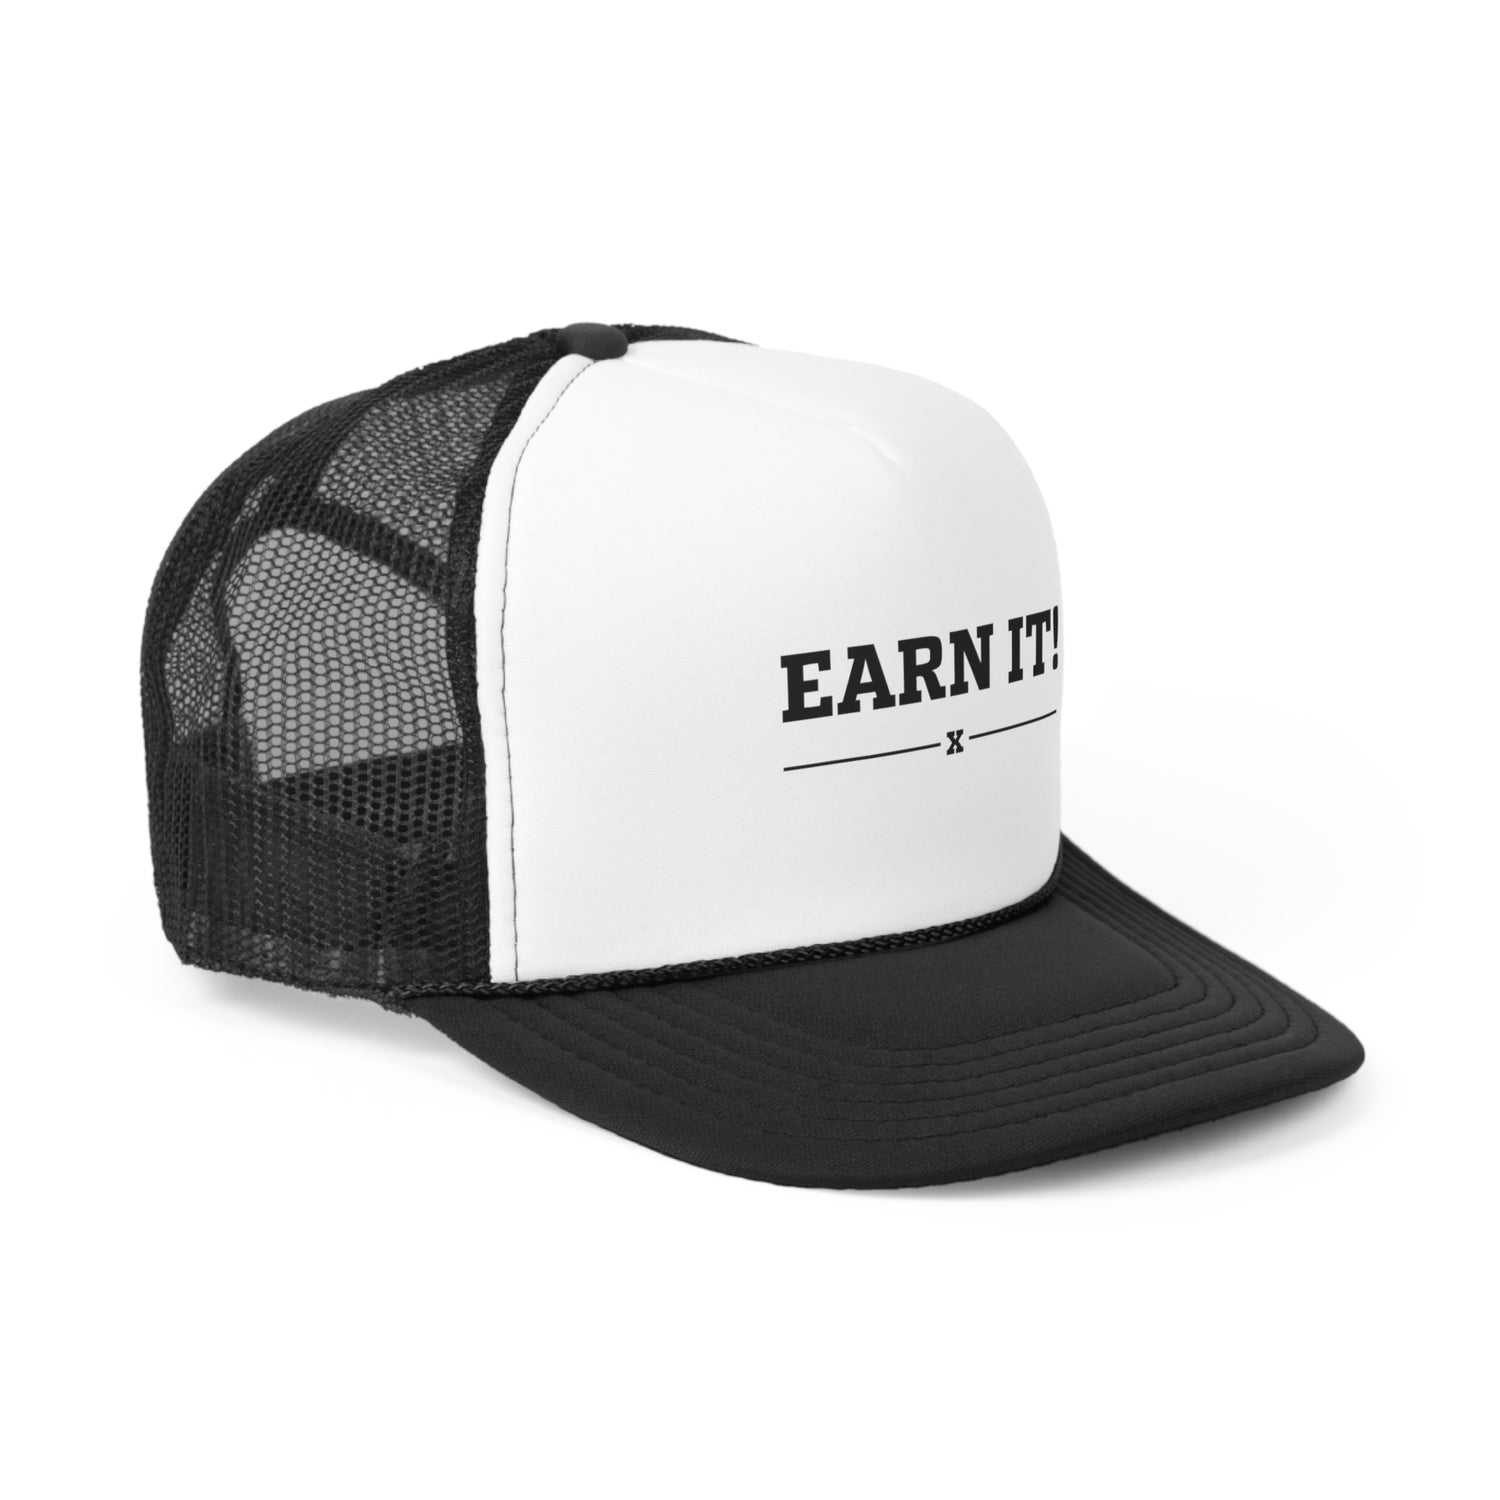 Earn It Trucker Caps